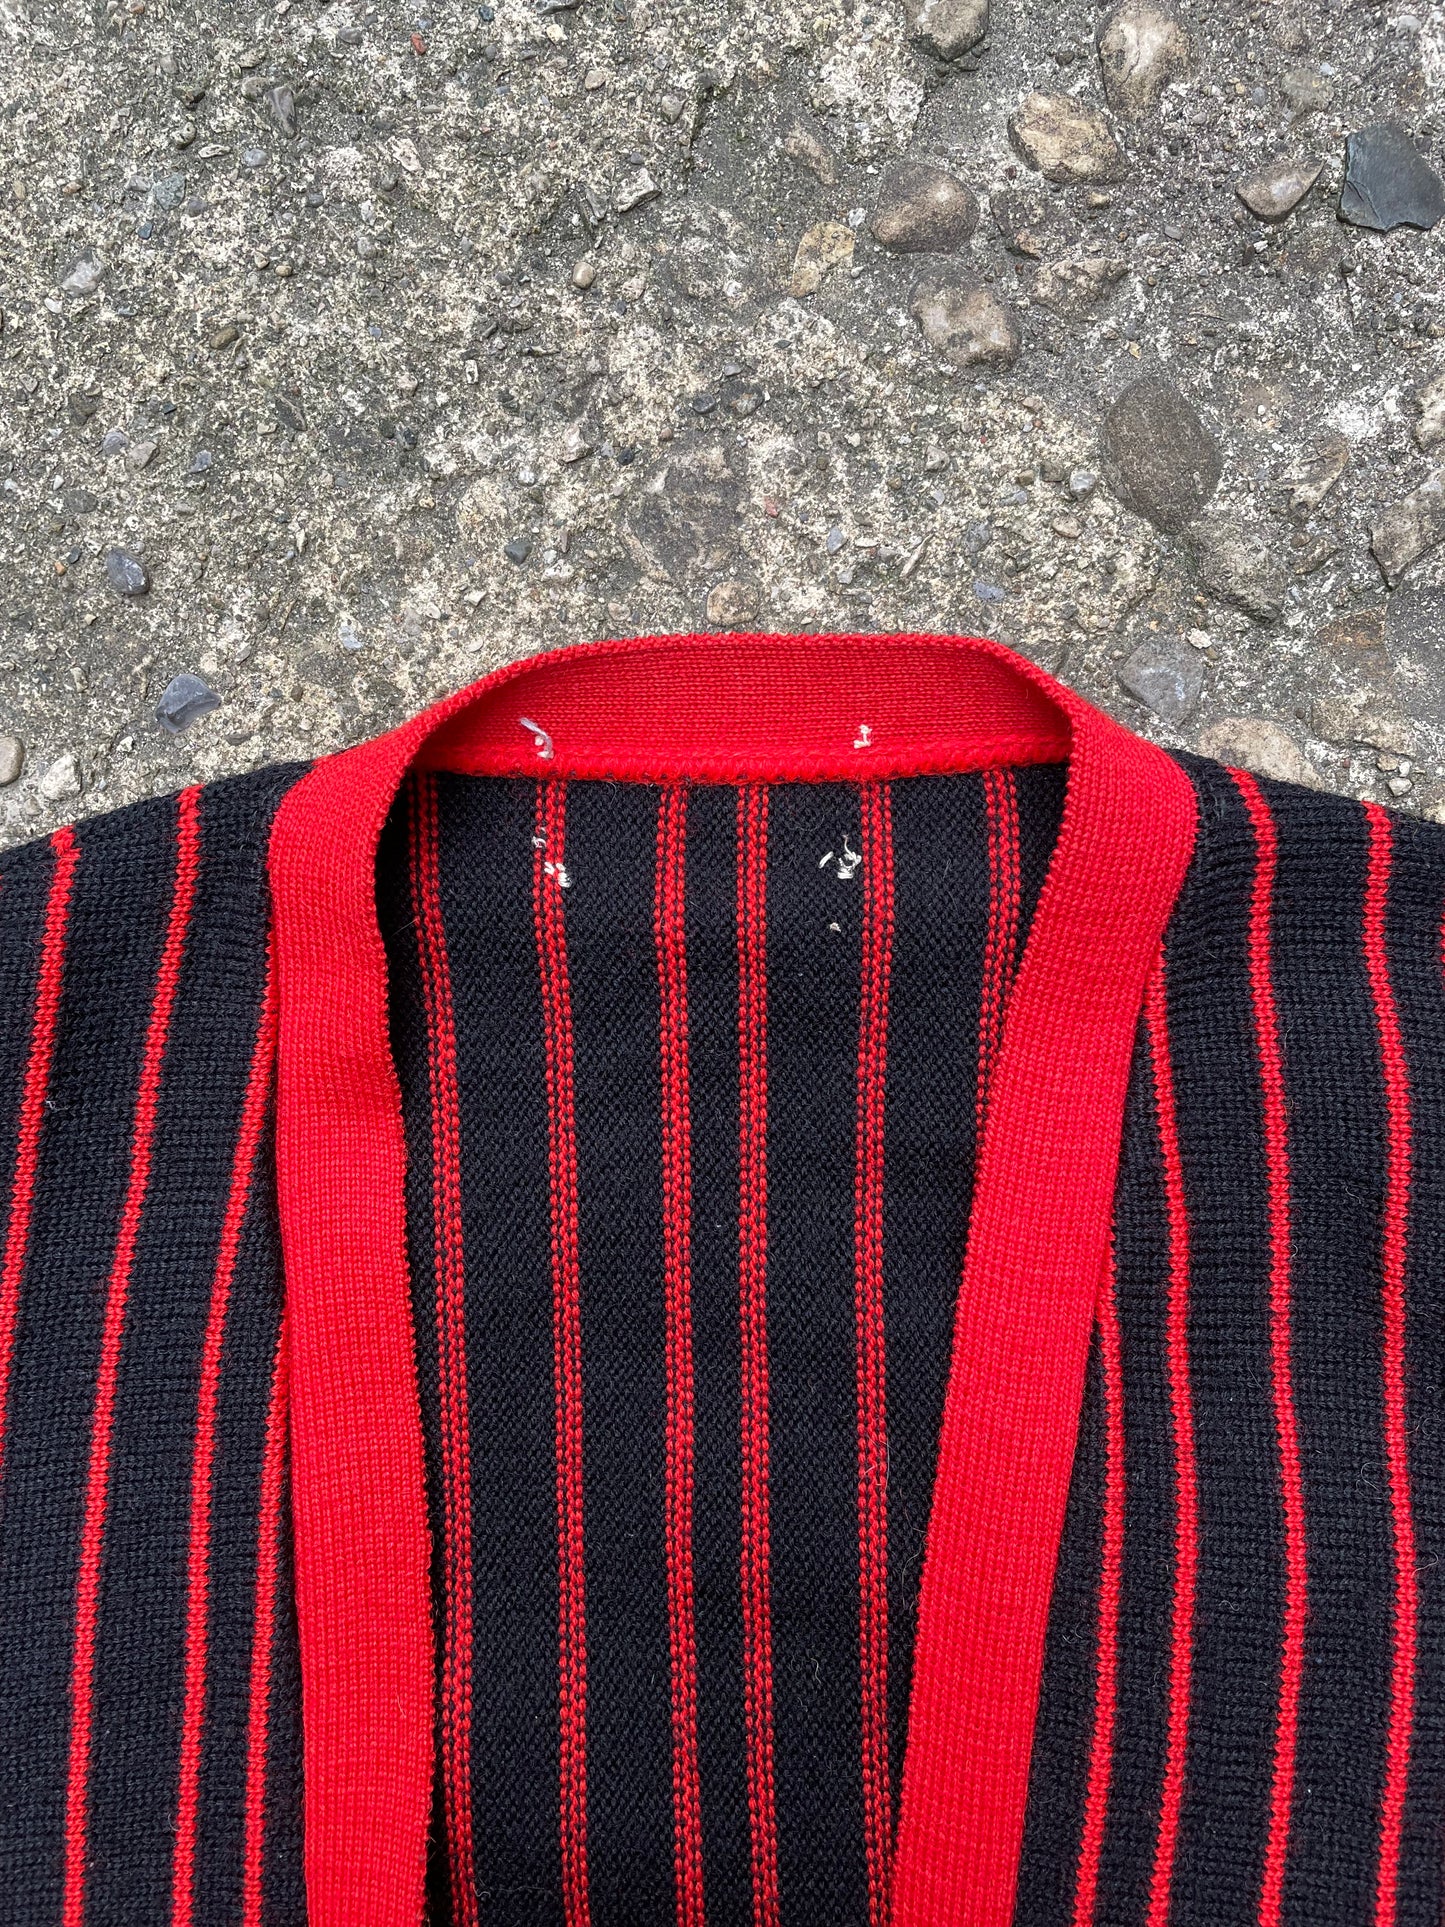 1960's Red & Black Striped Knit Cardigan - L